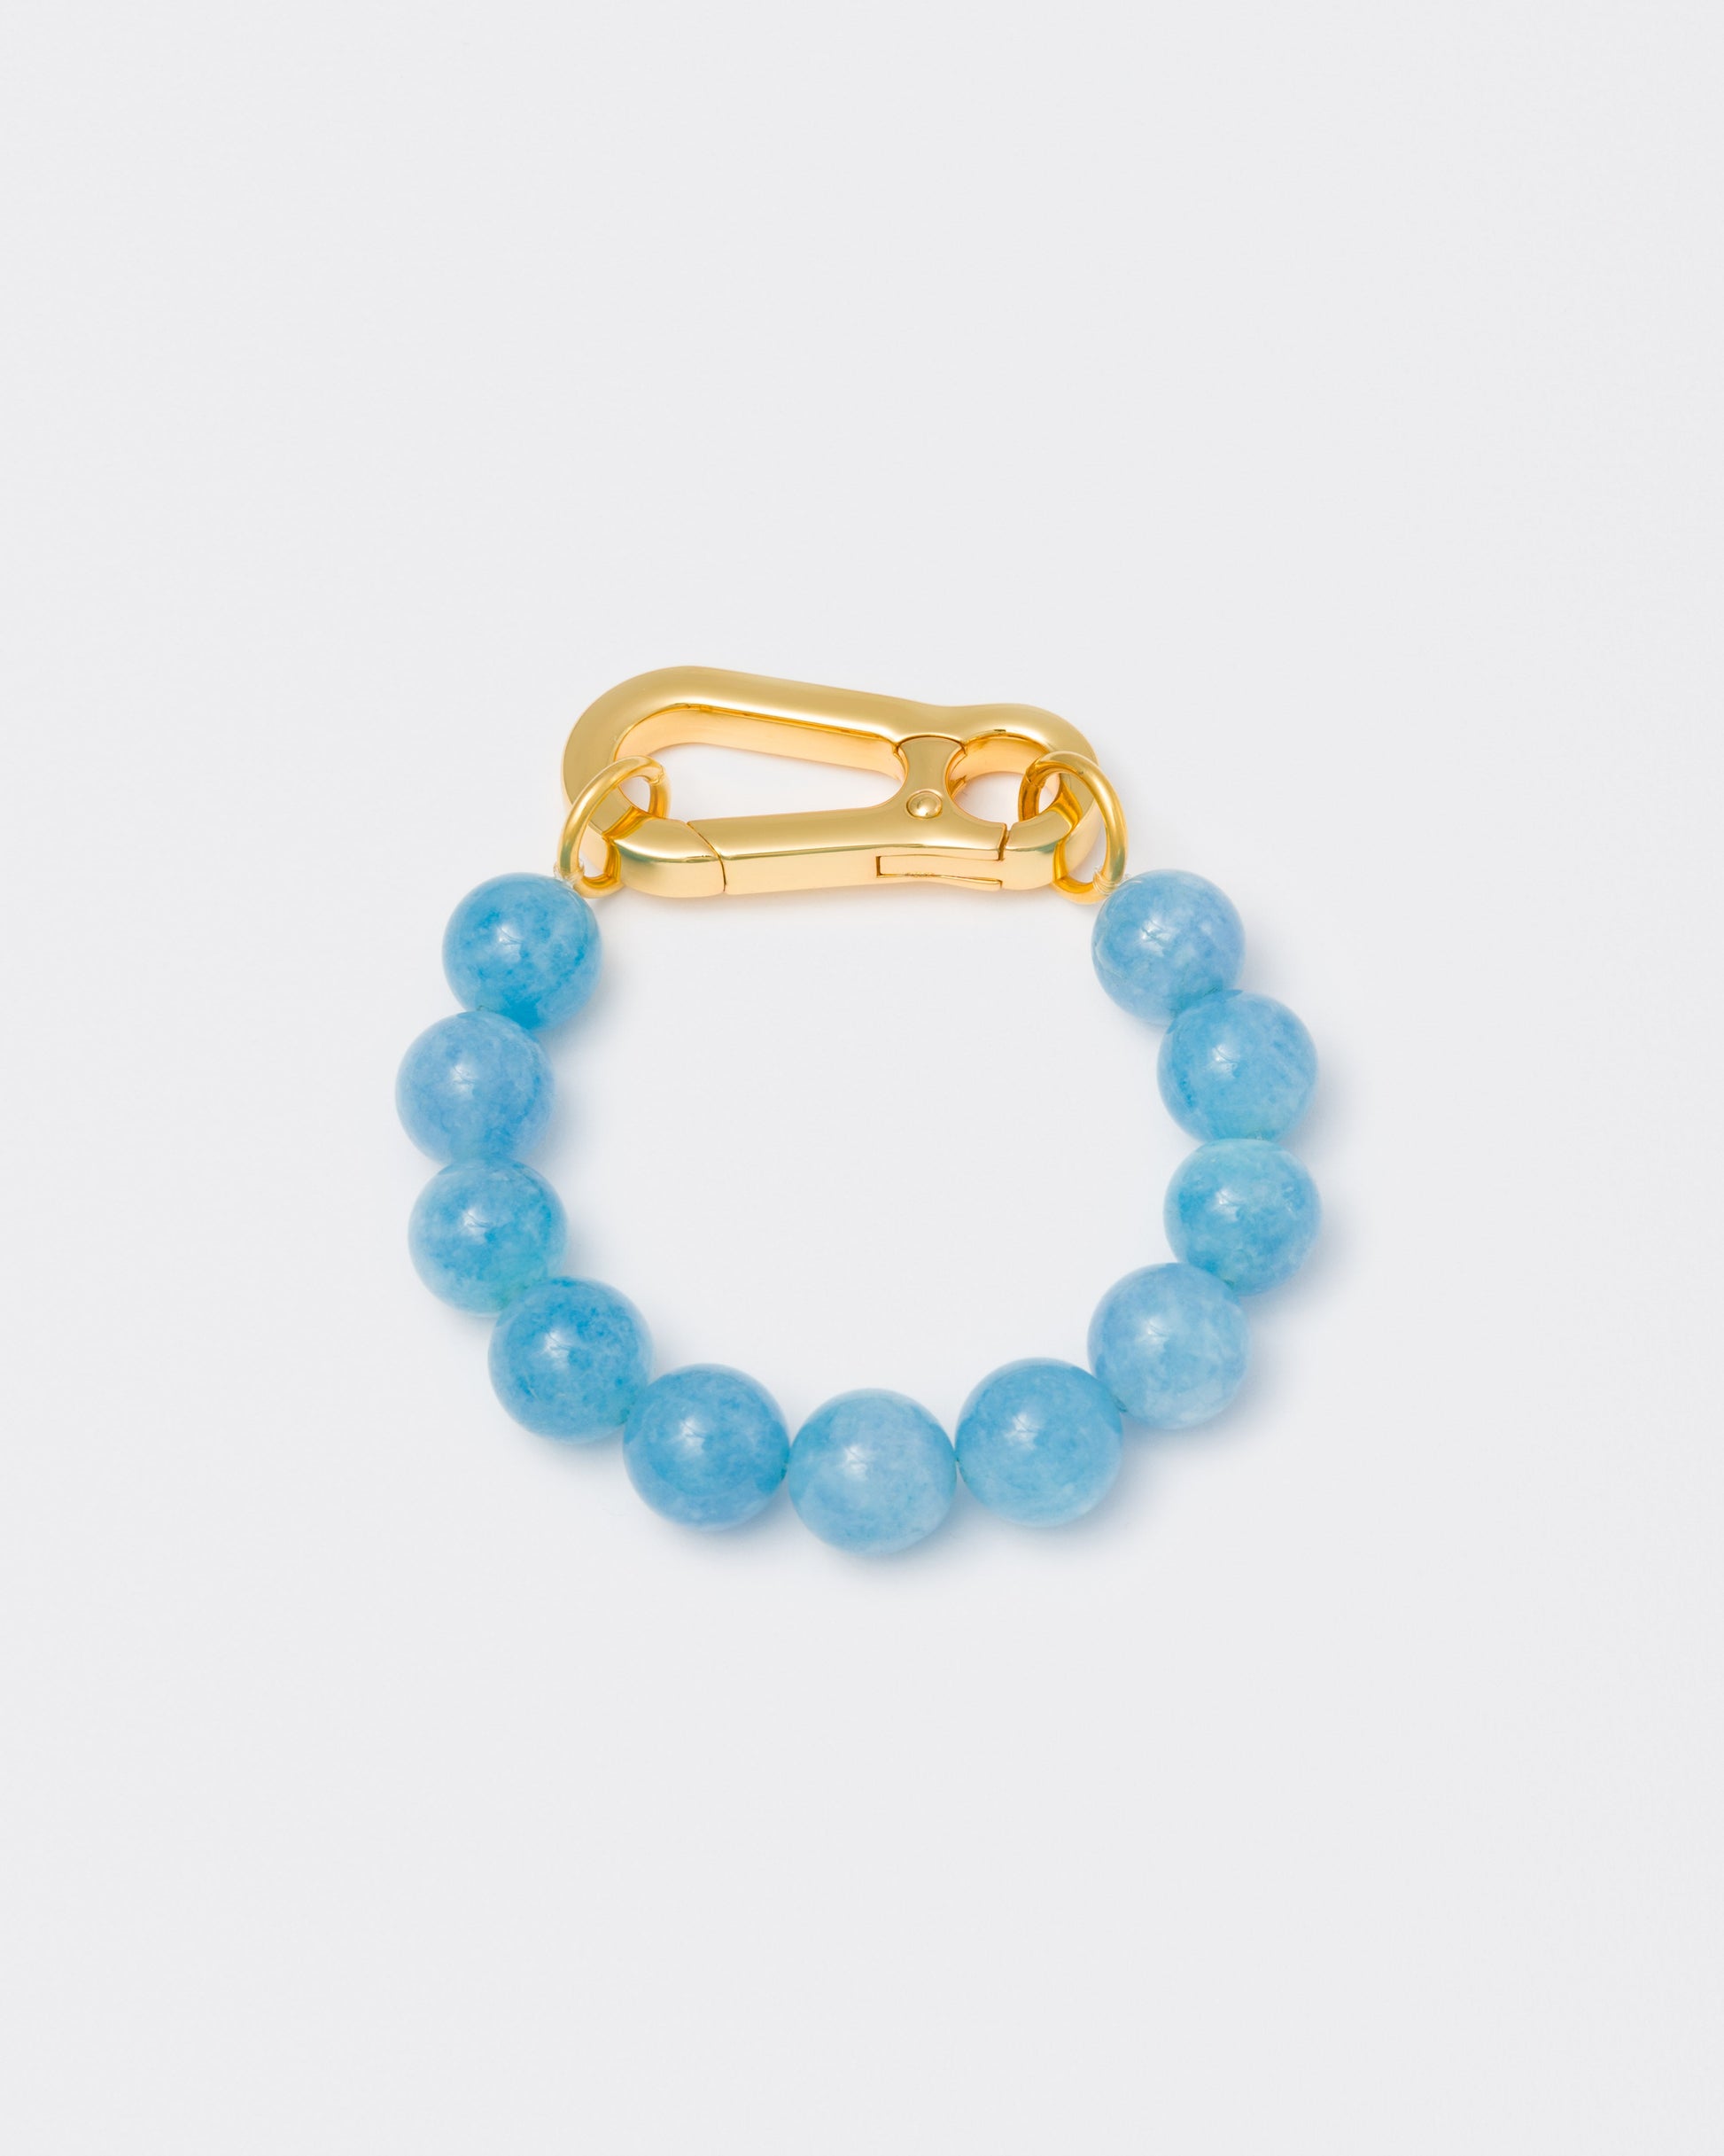 Aquamarine stones bracelet with 18k yellow gold coated lasered logo oversize carabiner clasp.